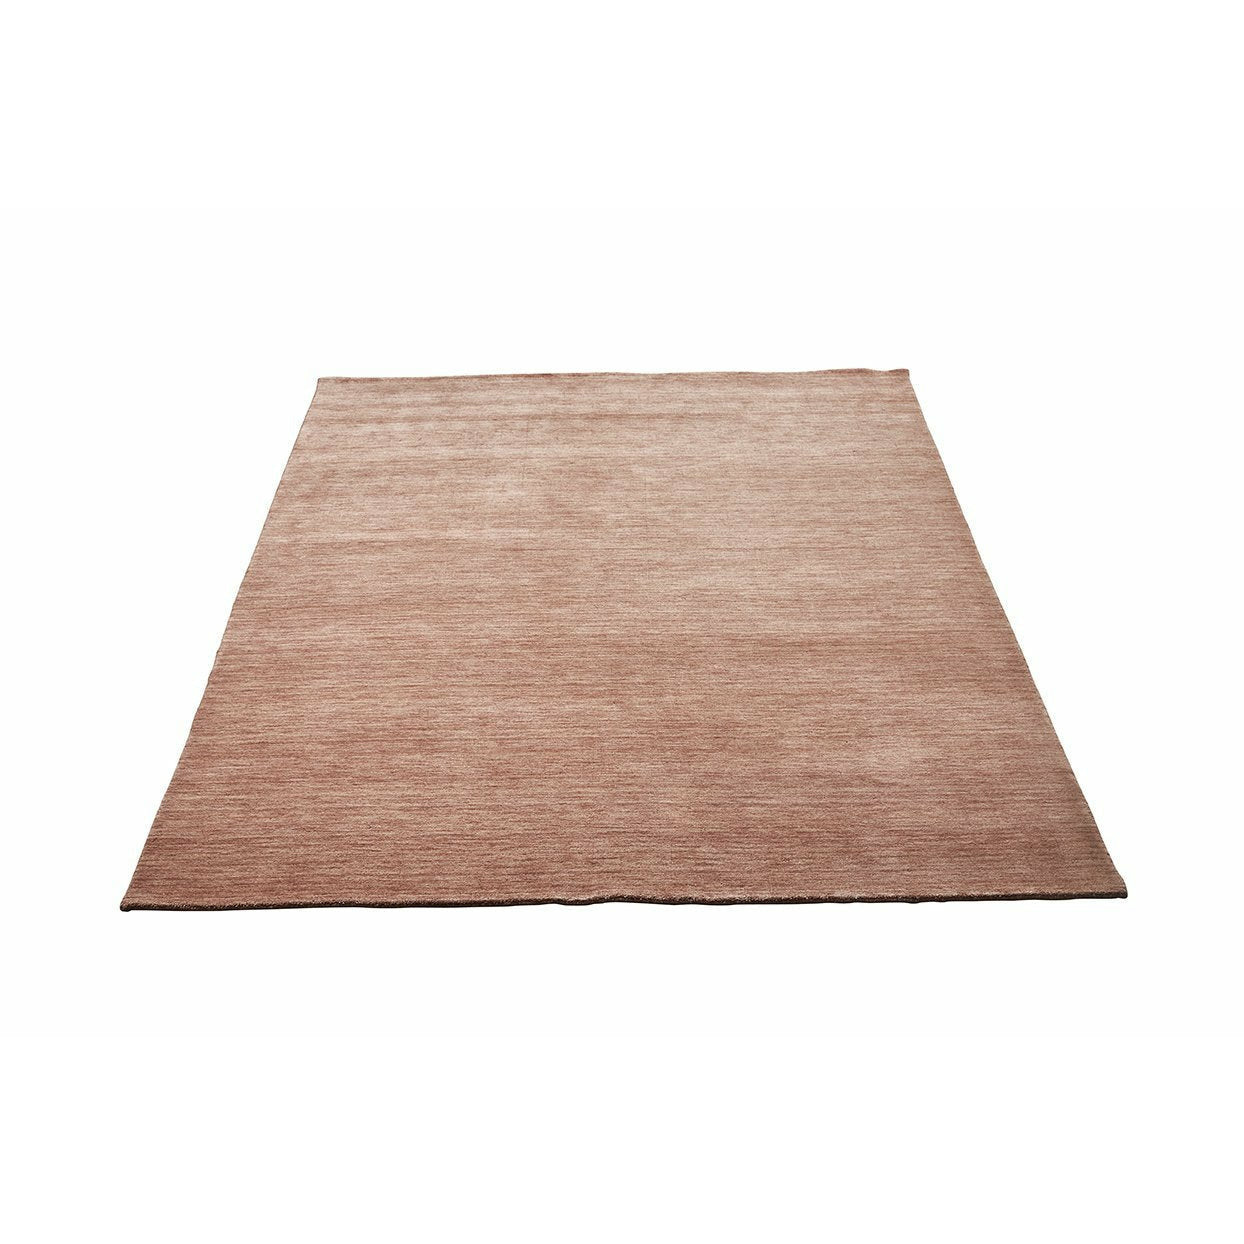 Creme de Cafe Massimo Earth Carpet, 170x240 cm